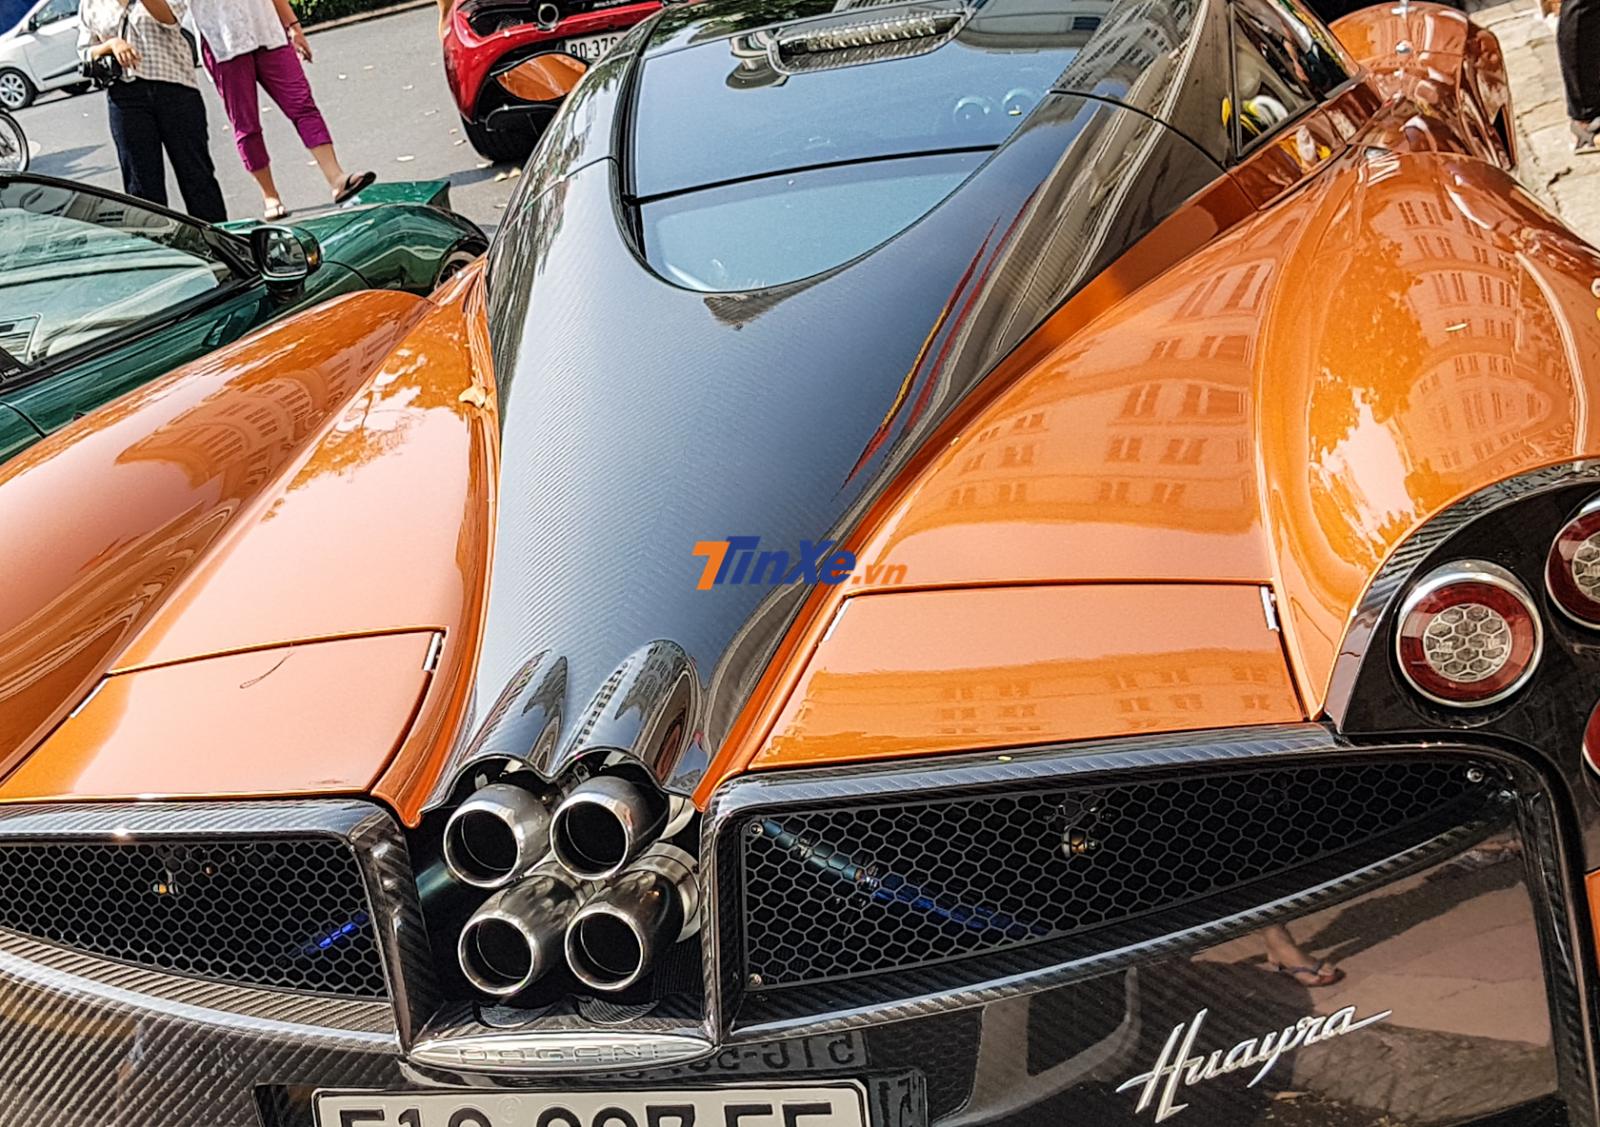 Siêu phẩm Pagani Huayra của Minh Nhựa được trang bị khối động cơ V12, dung tích 6.0 lít, tăng áp kép do Mercedes-AMG sản xuất